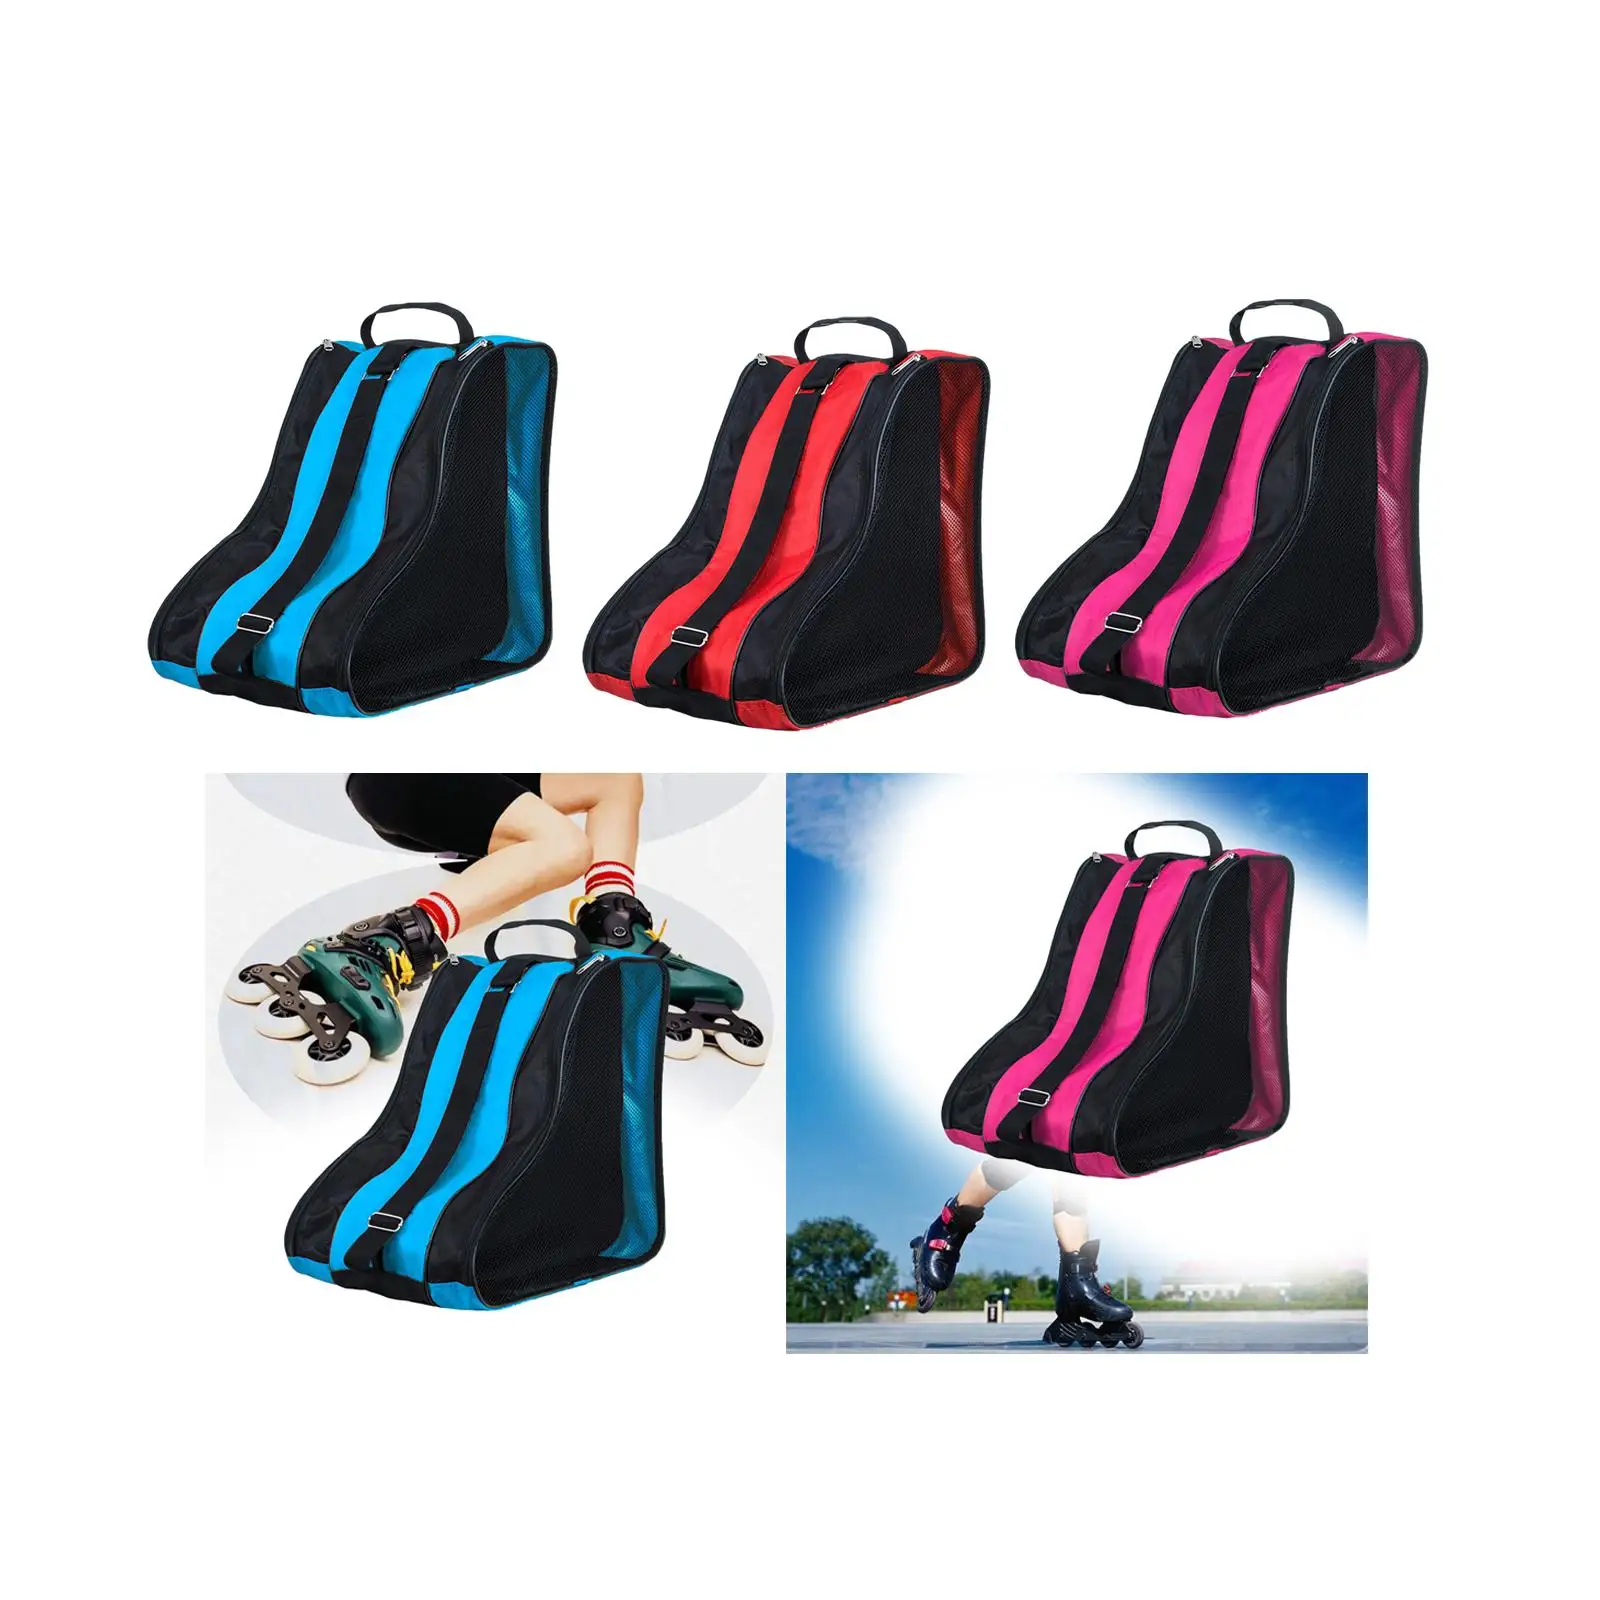 Roller Skate Bag with Adjustable Shoulder Strap Lightweight Durable Portable Handbag for Quad Skates Figure Skates Inline Skates